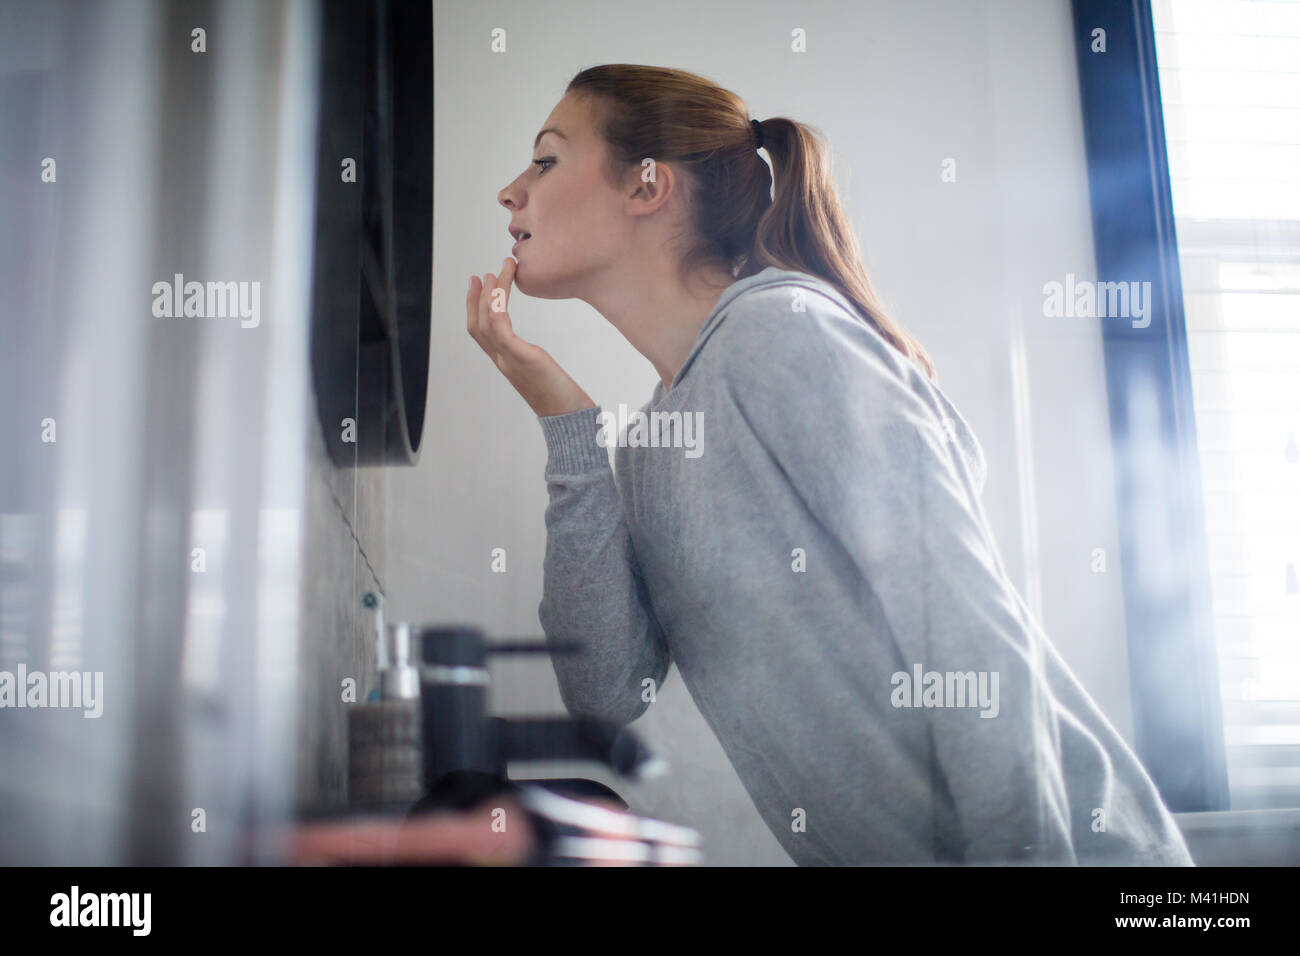 Junge erwachsene Frau, an der Reflexion im Badezimmer Spiegel Stockfoto